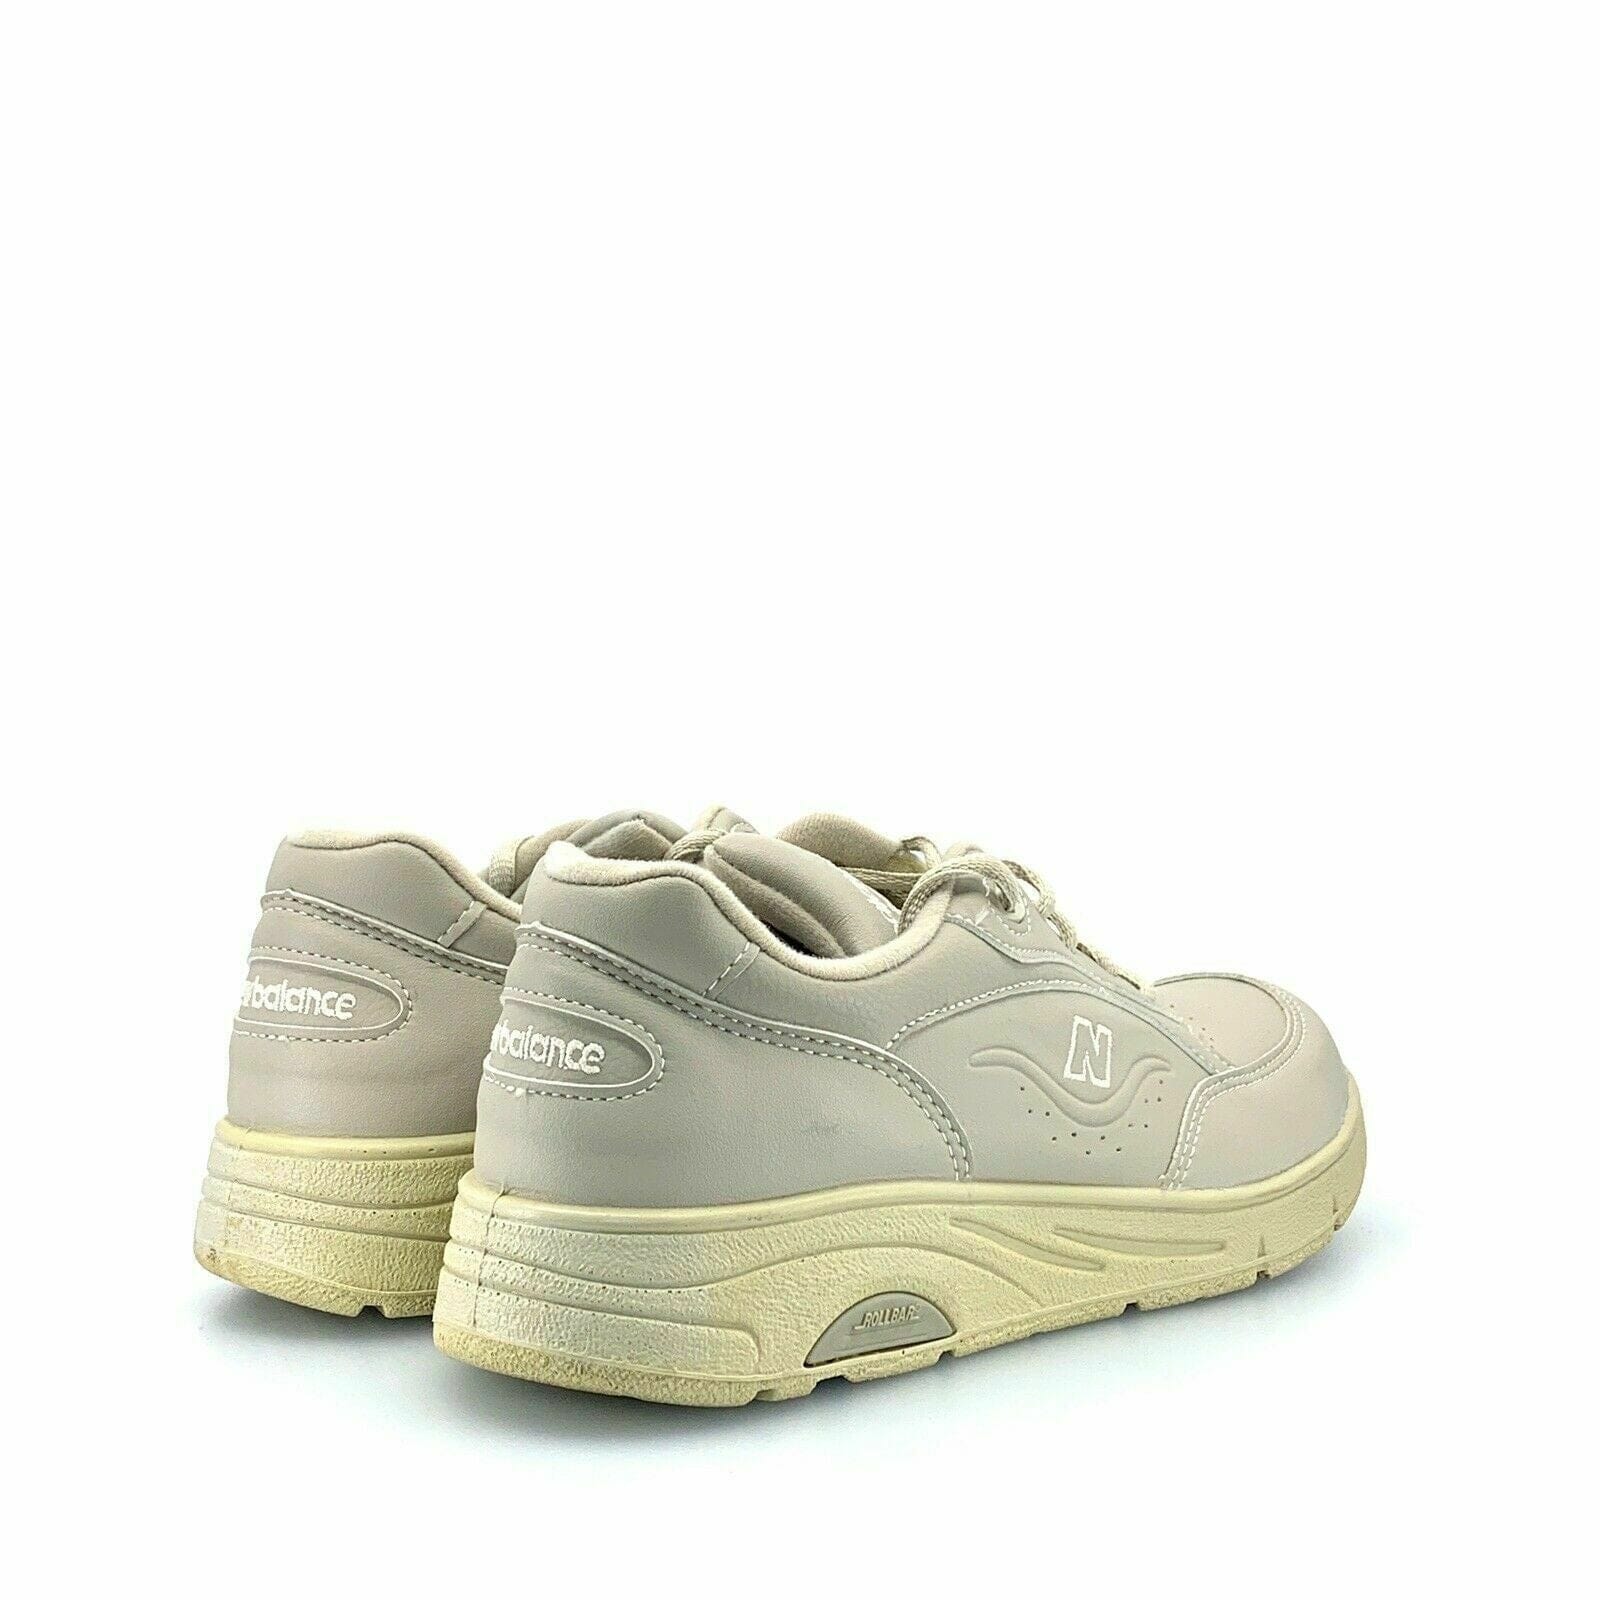 New Balance | Shoes | Size 6 Cream New Balance Rollbar 82 Athletic Walking  Shoes | Poshmark